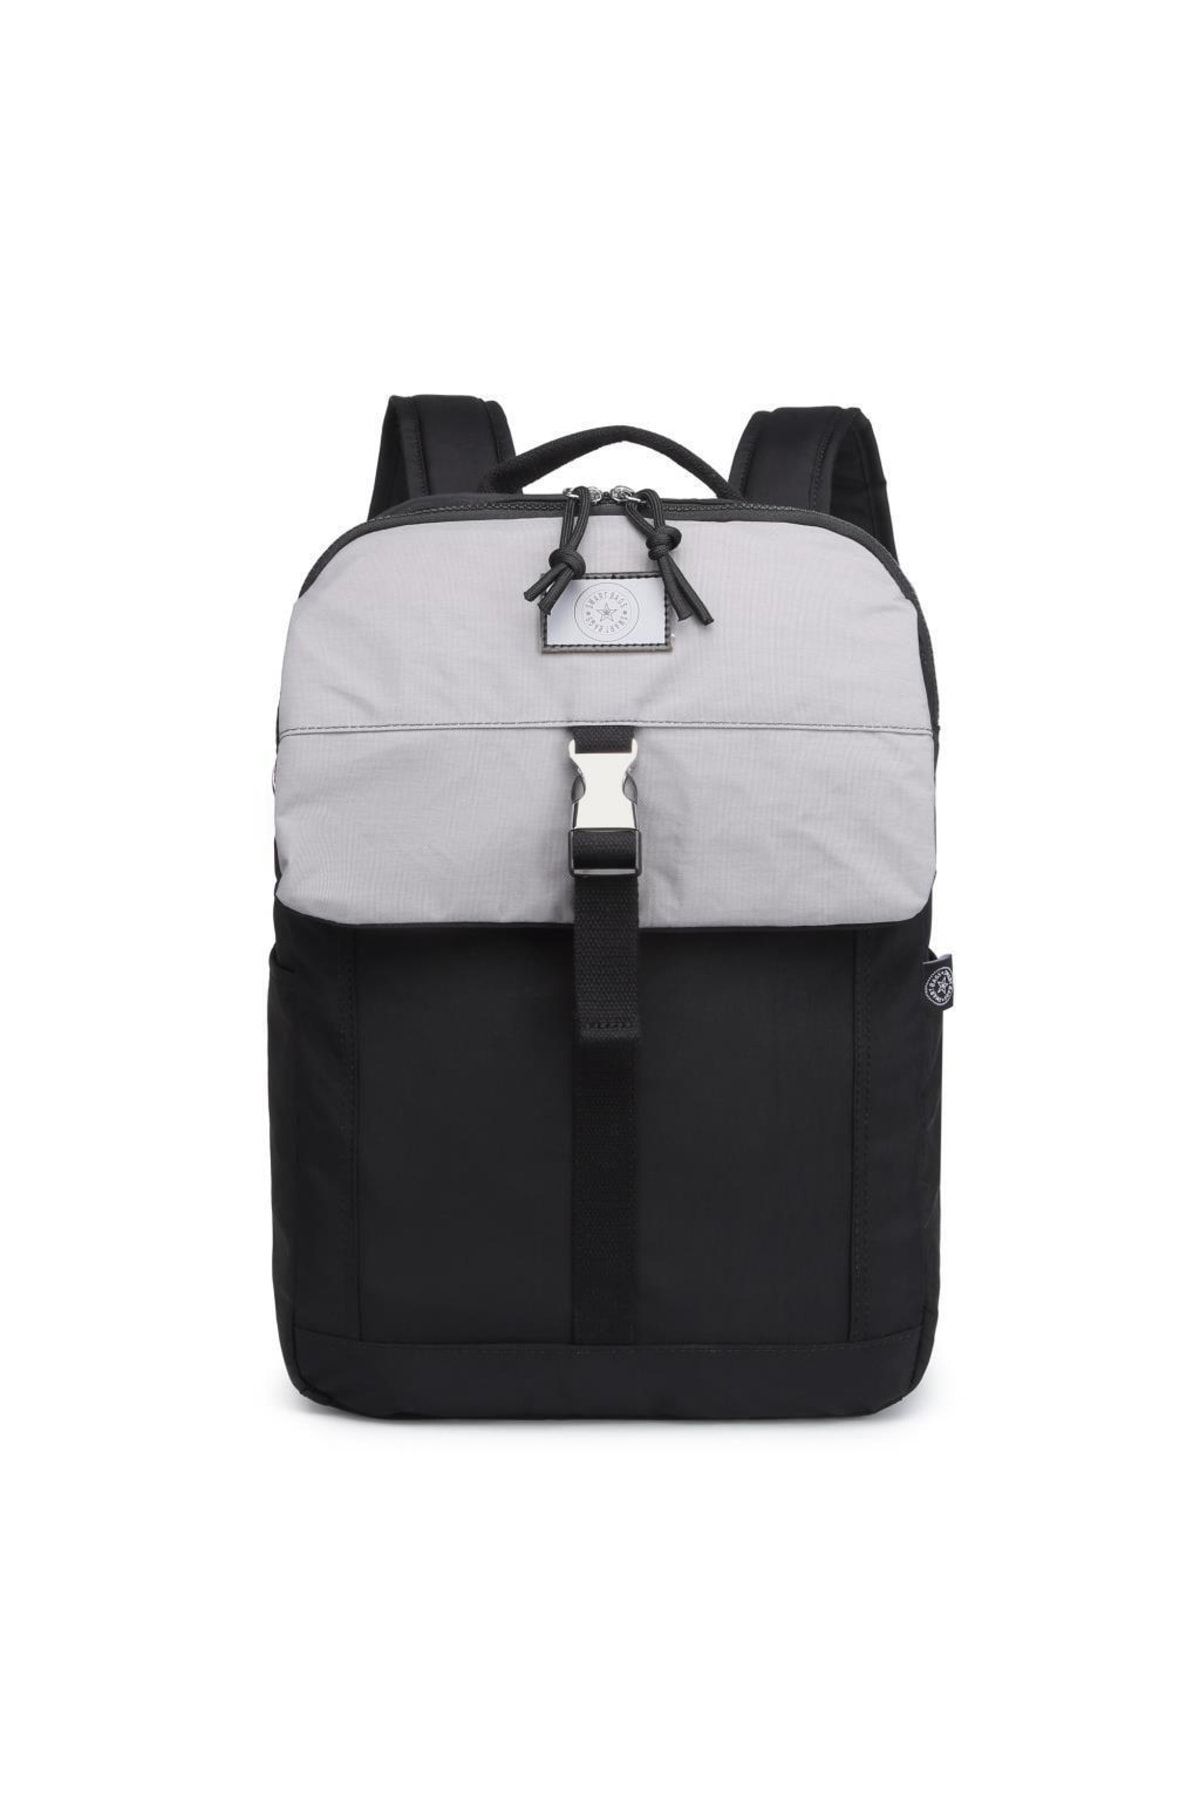 Smart Bags Uniseks Sırt Çantası Büyük Boy Renkli Tasarım 3183